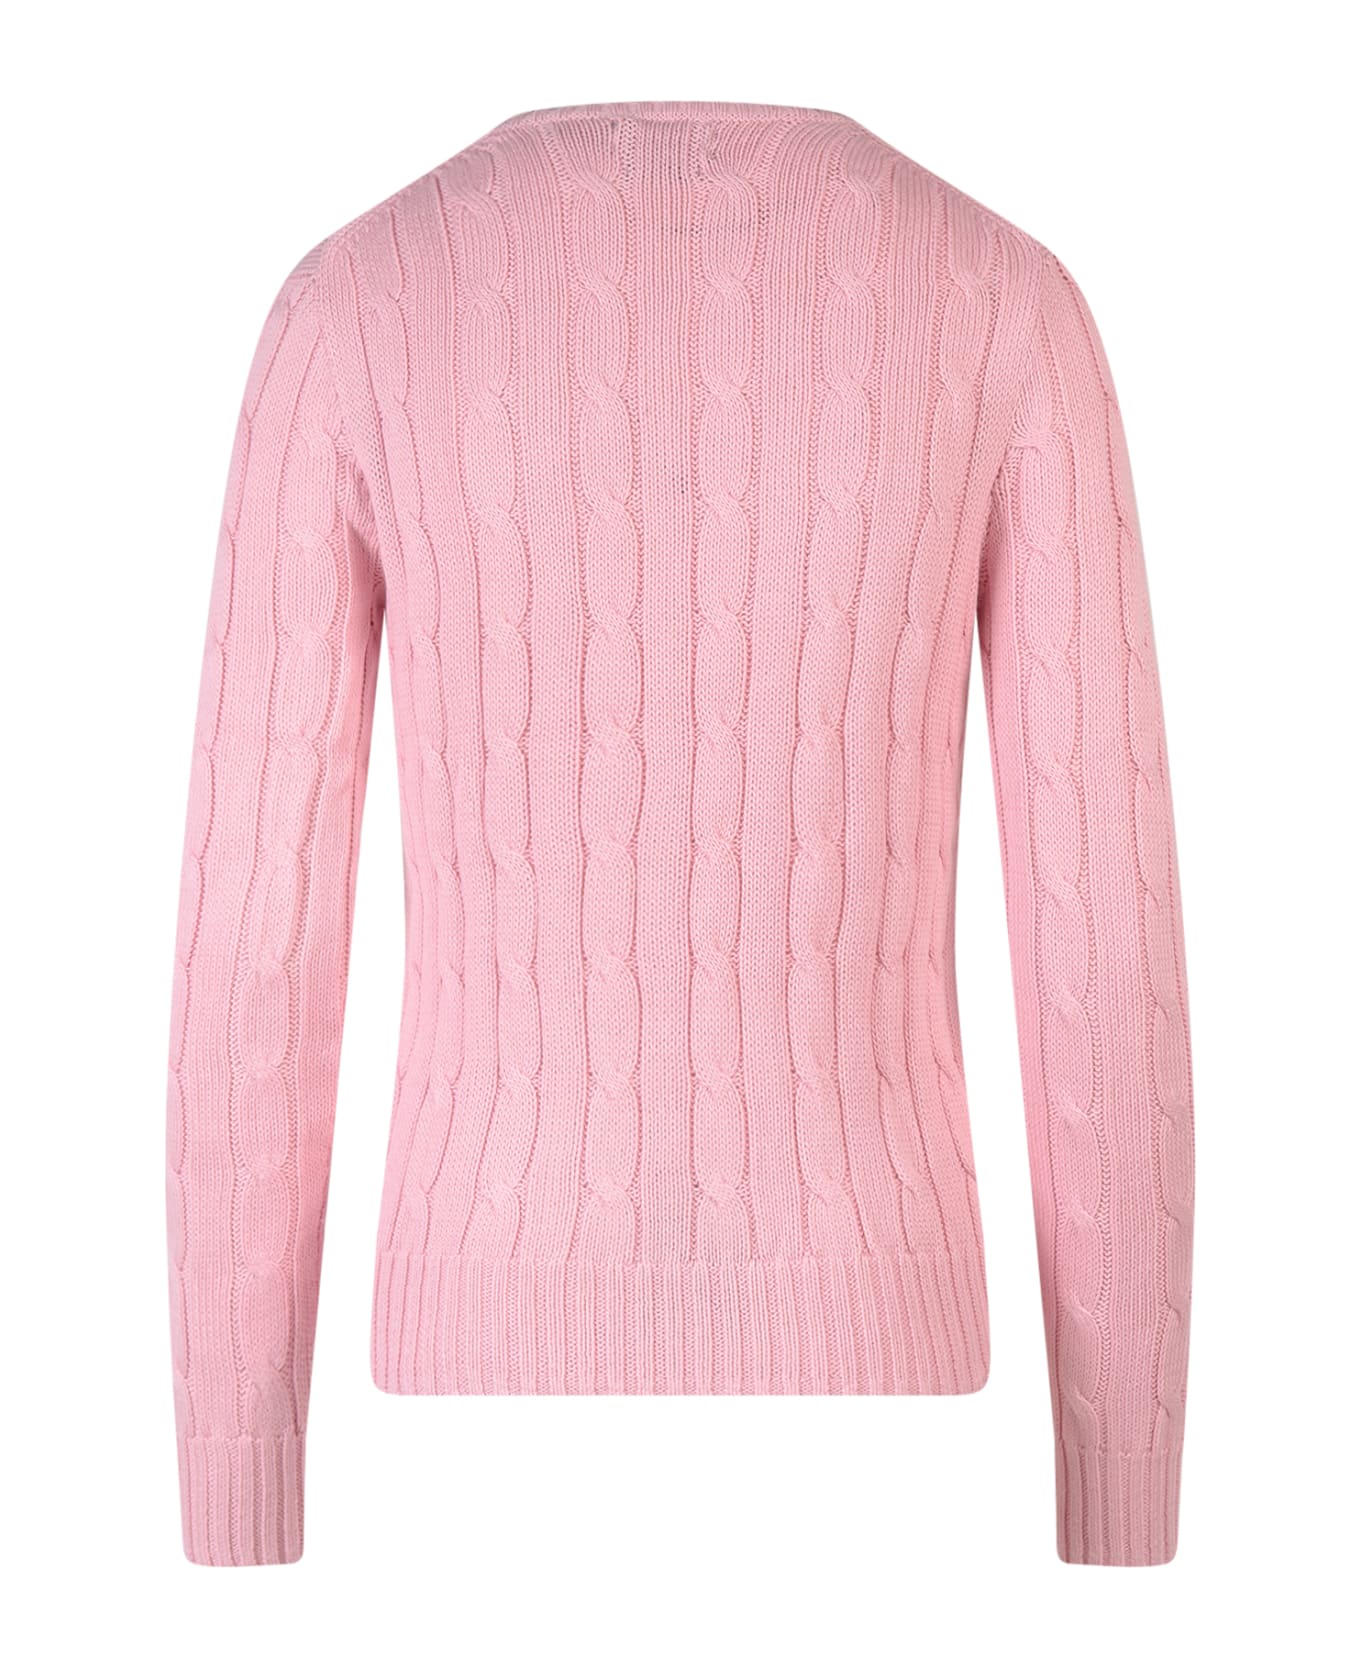 Ralph Lauren Sweater - Carmel Pink ニットウェア